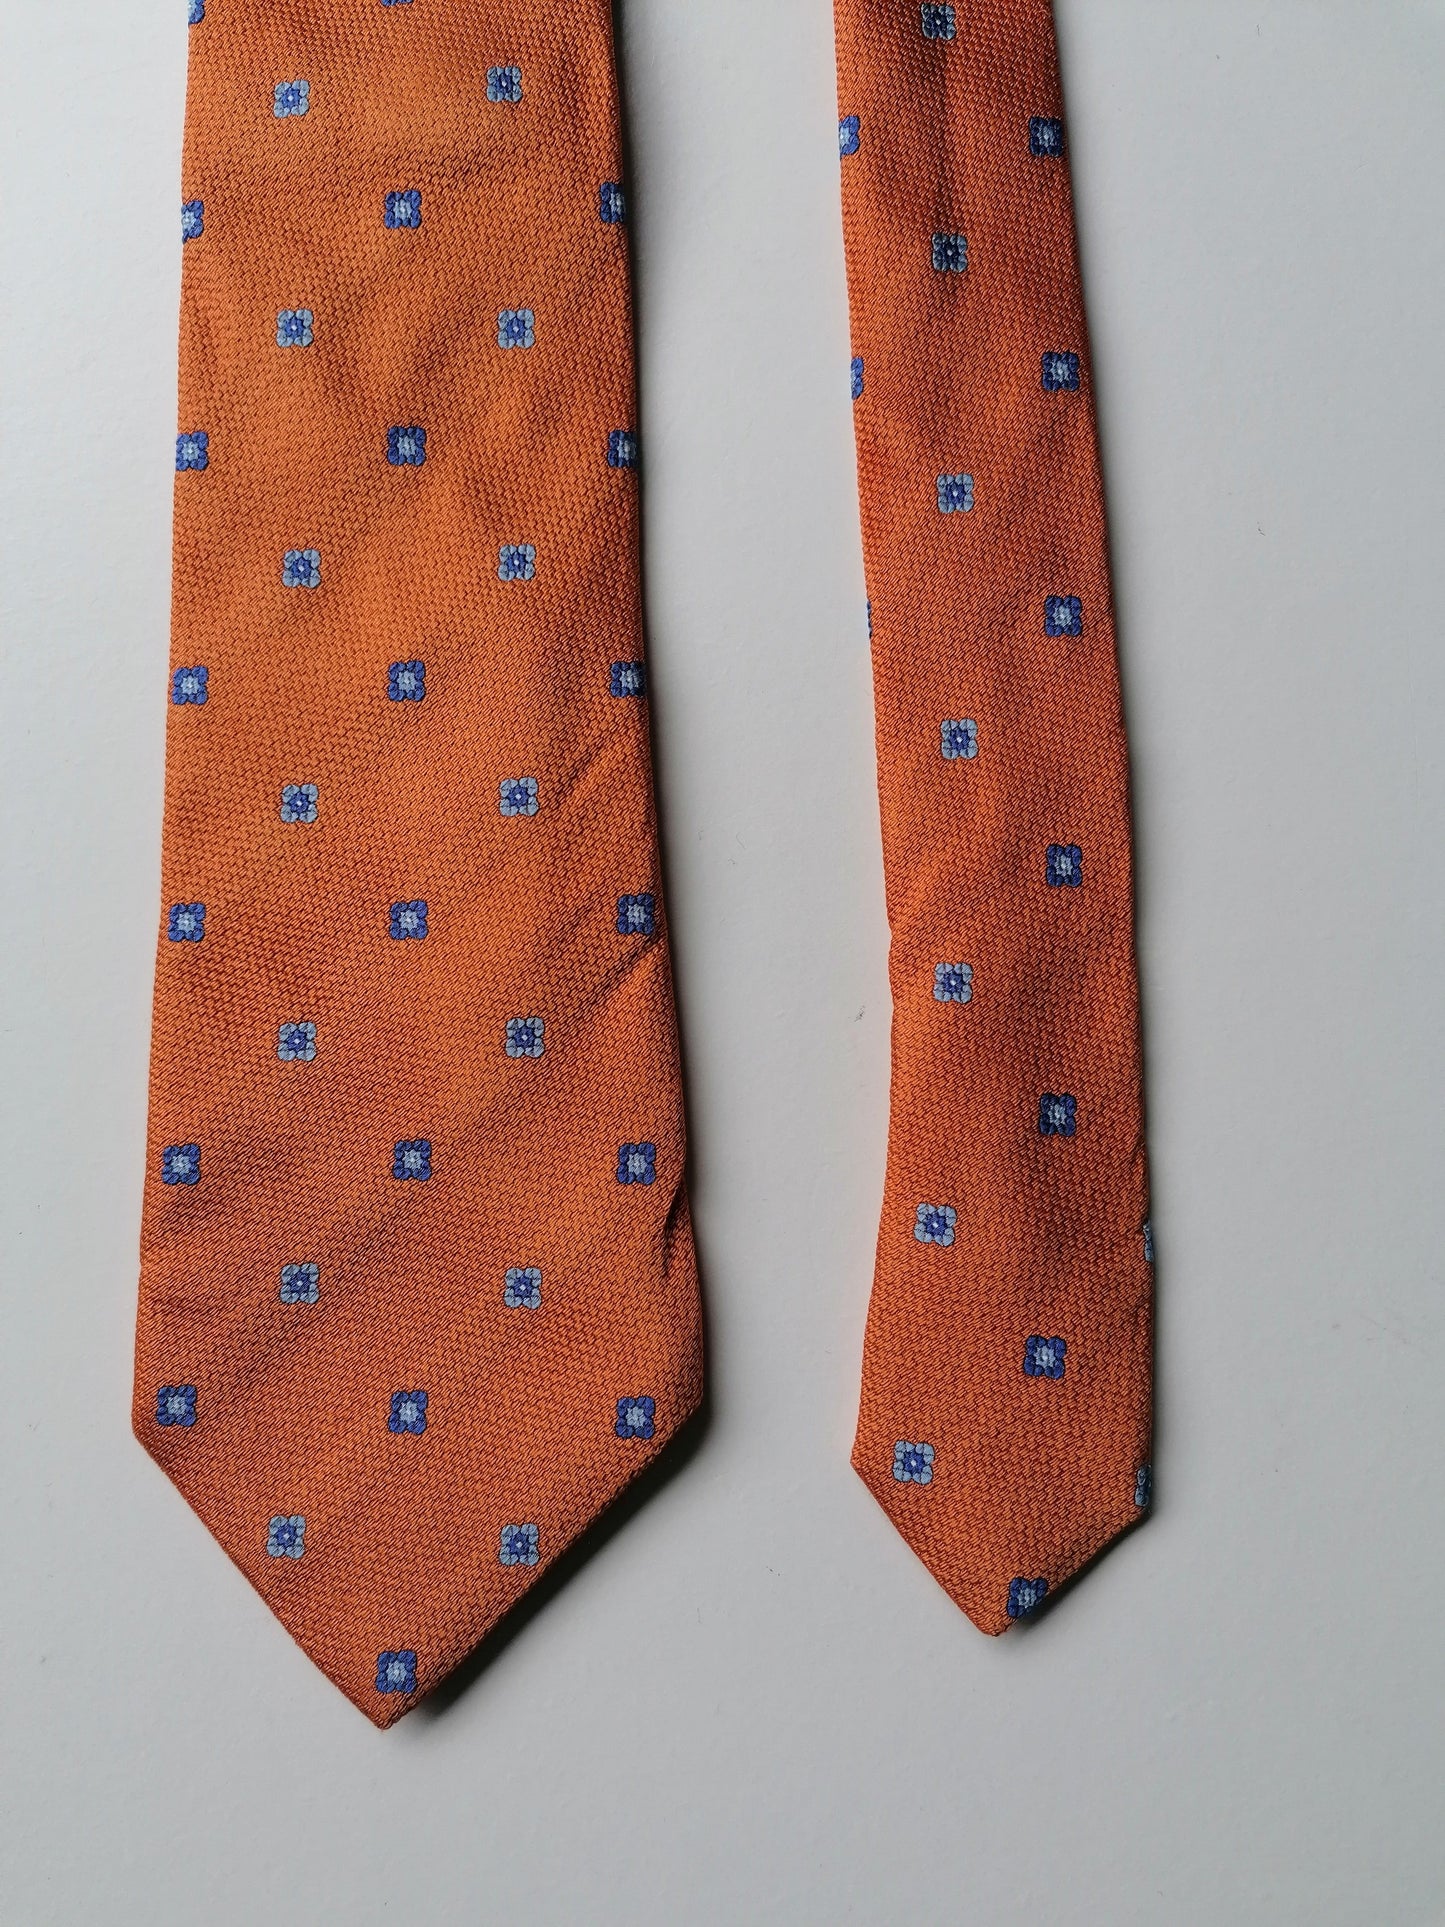 Cravatta di seta Vakko. Colorato blu arancione.